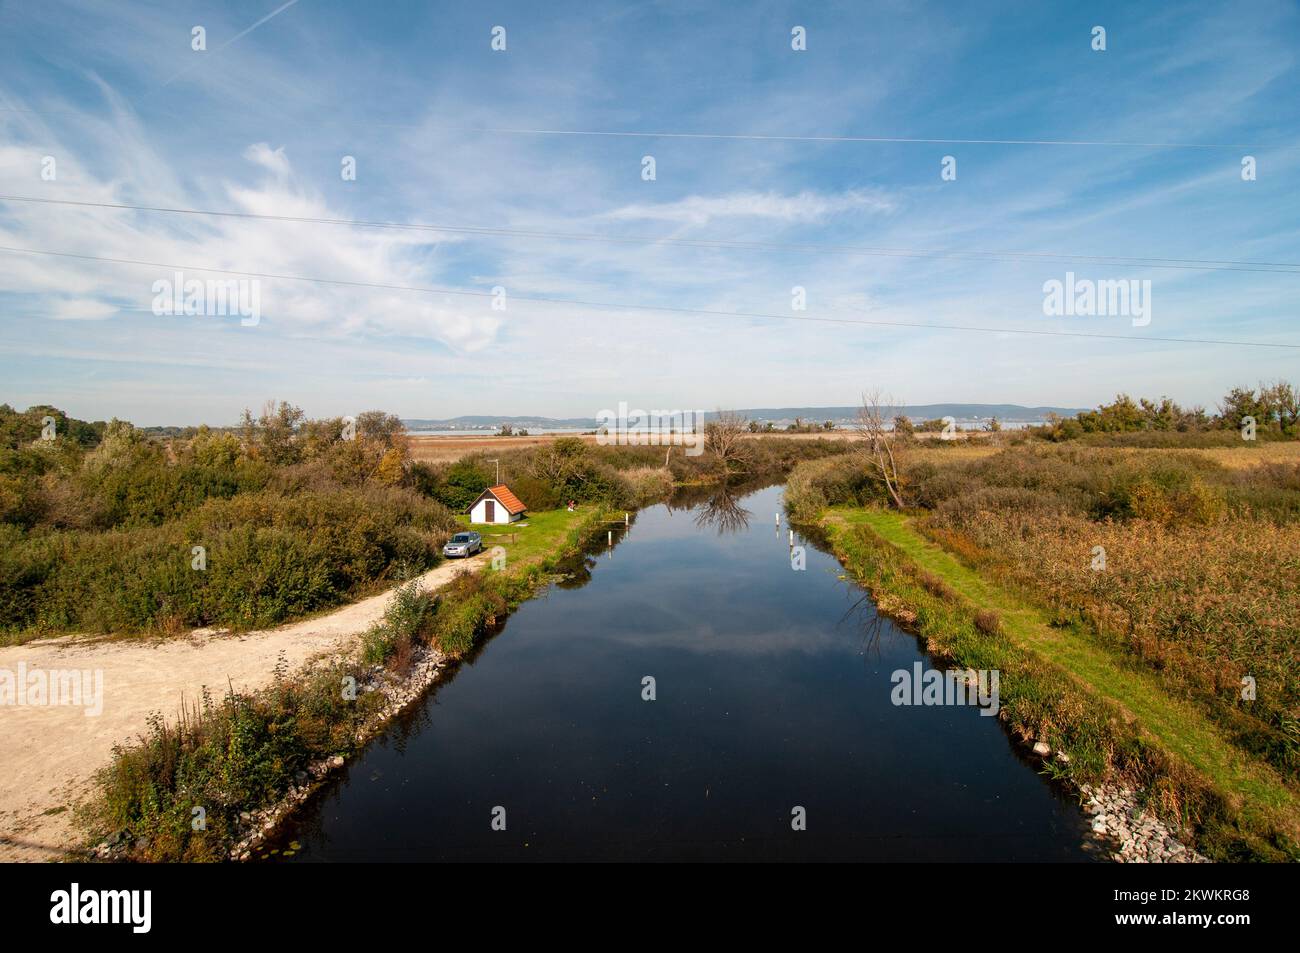 El río Zala desemboca en el lago Balaton en su costa sudoeste, lago Balaton, Hungría Foto de stock